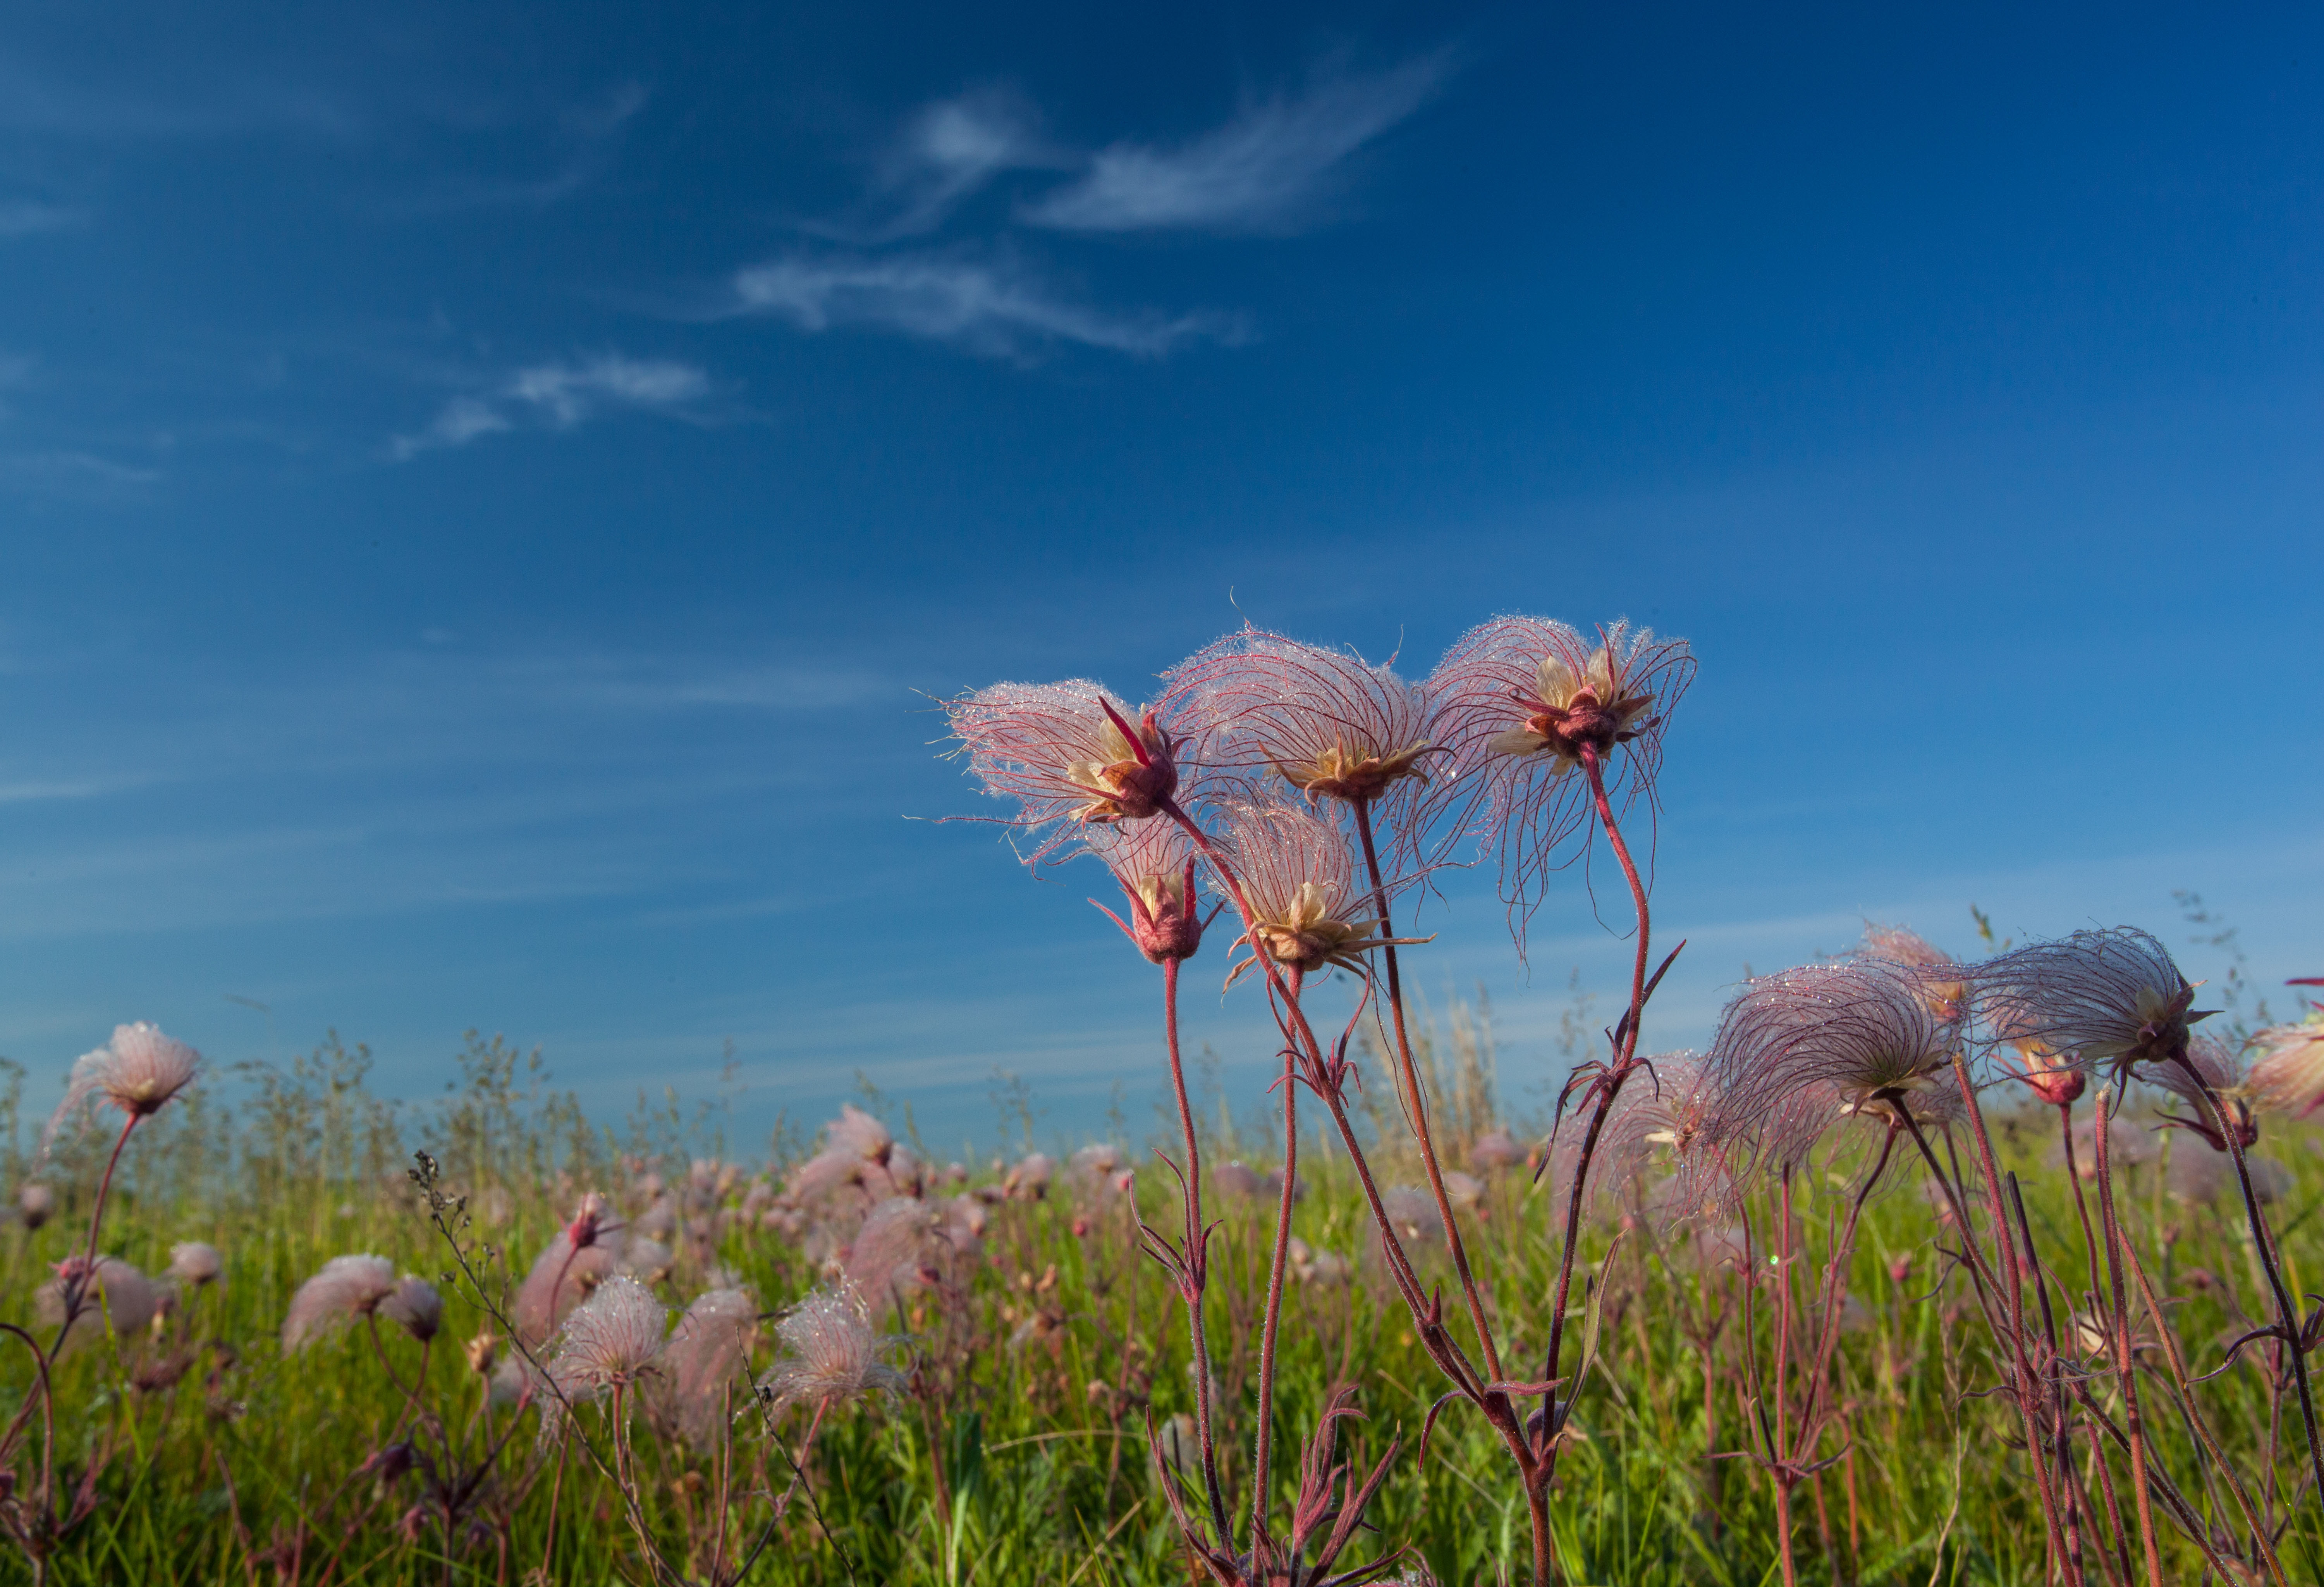 Closeup of wispy purple flowers growing in a field against a clear blue sky.